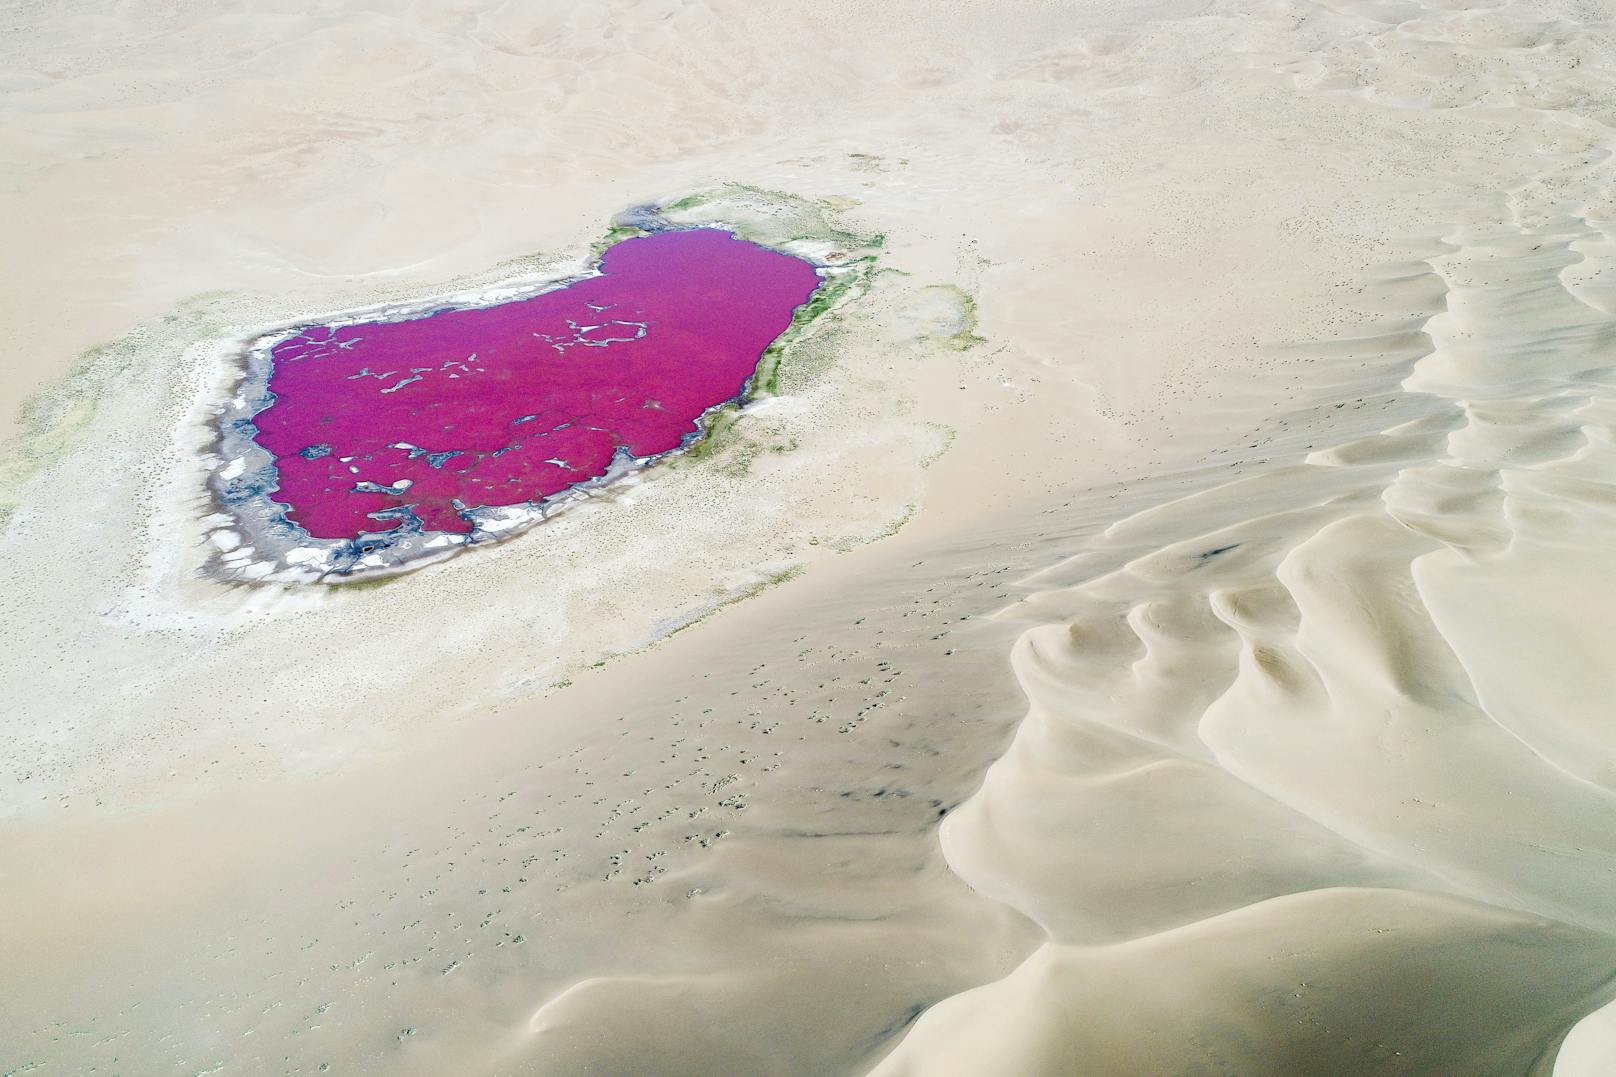 Die rätselhaften Seen der Badain-Jaran-Wüste in China